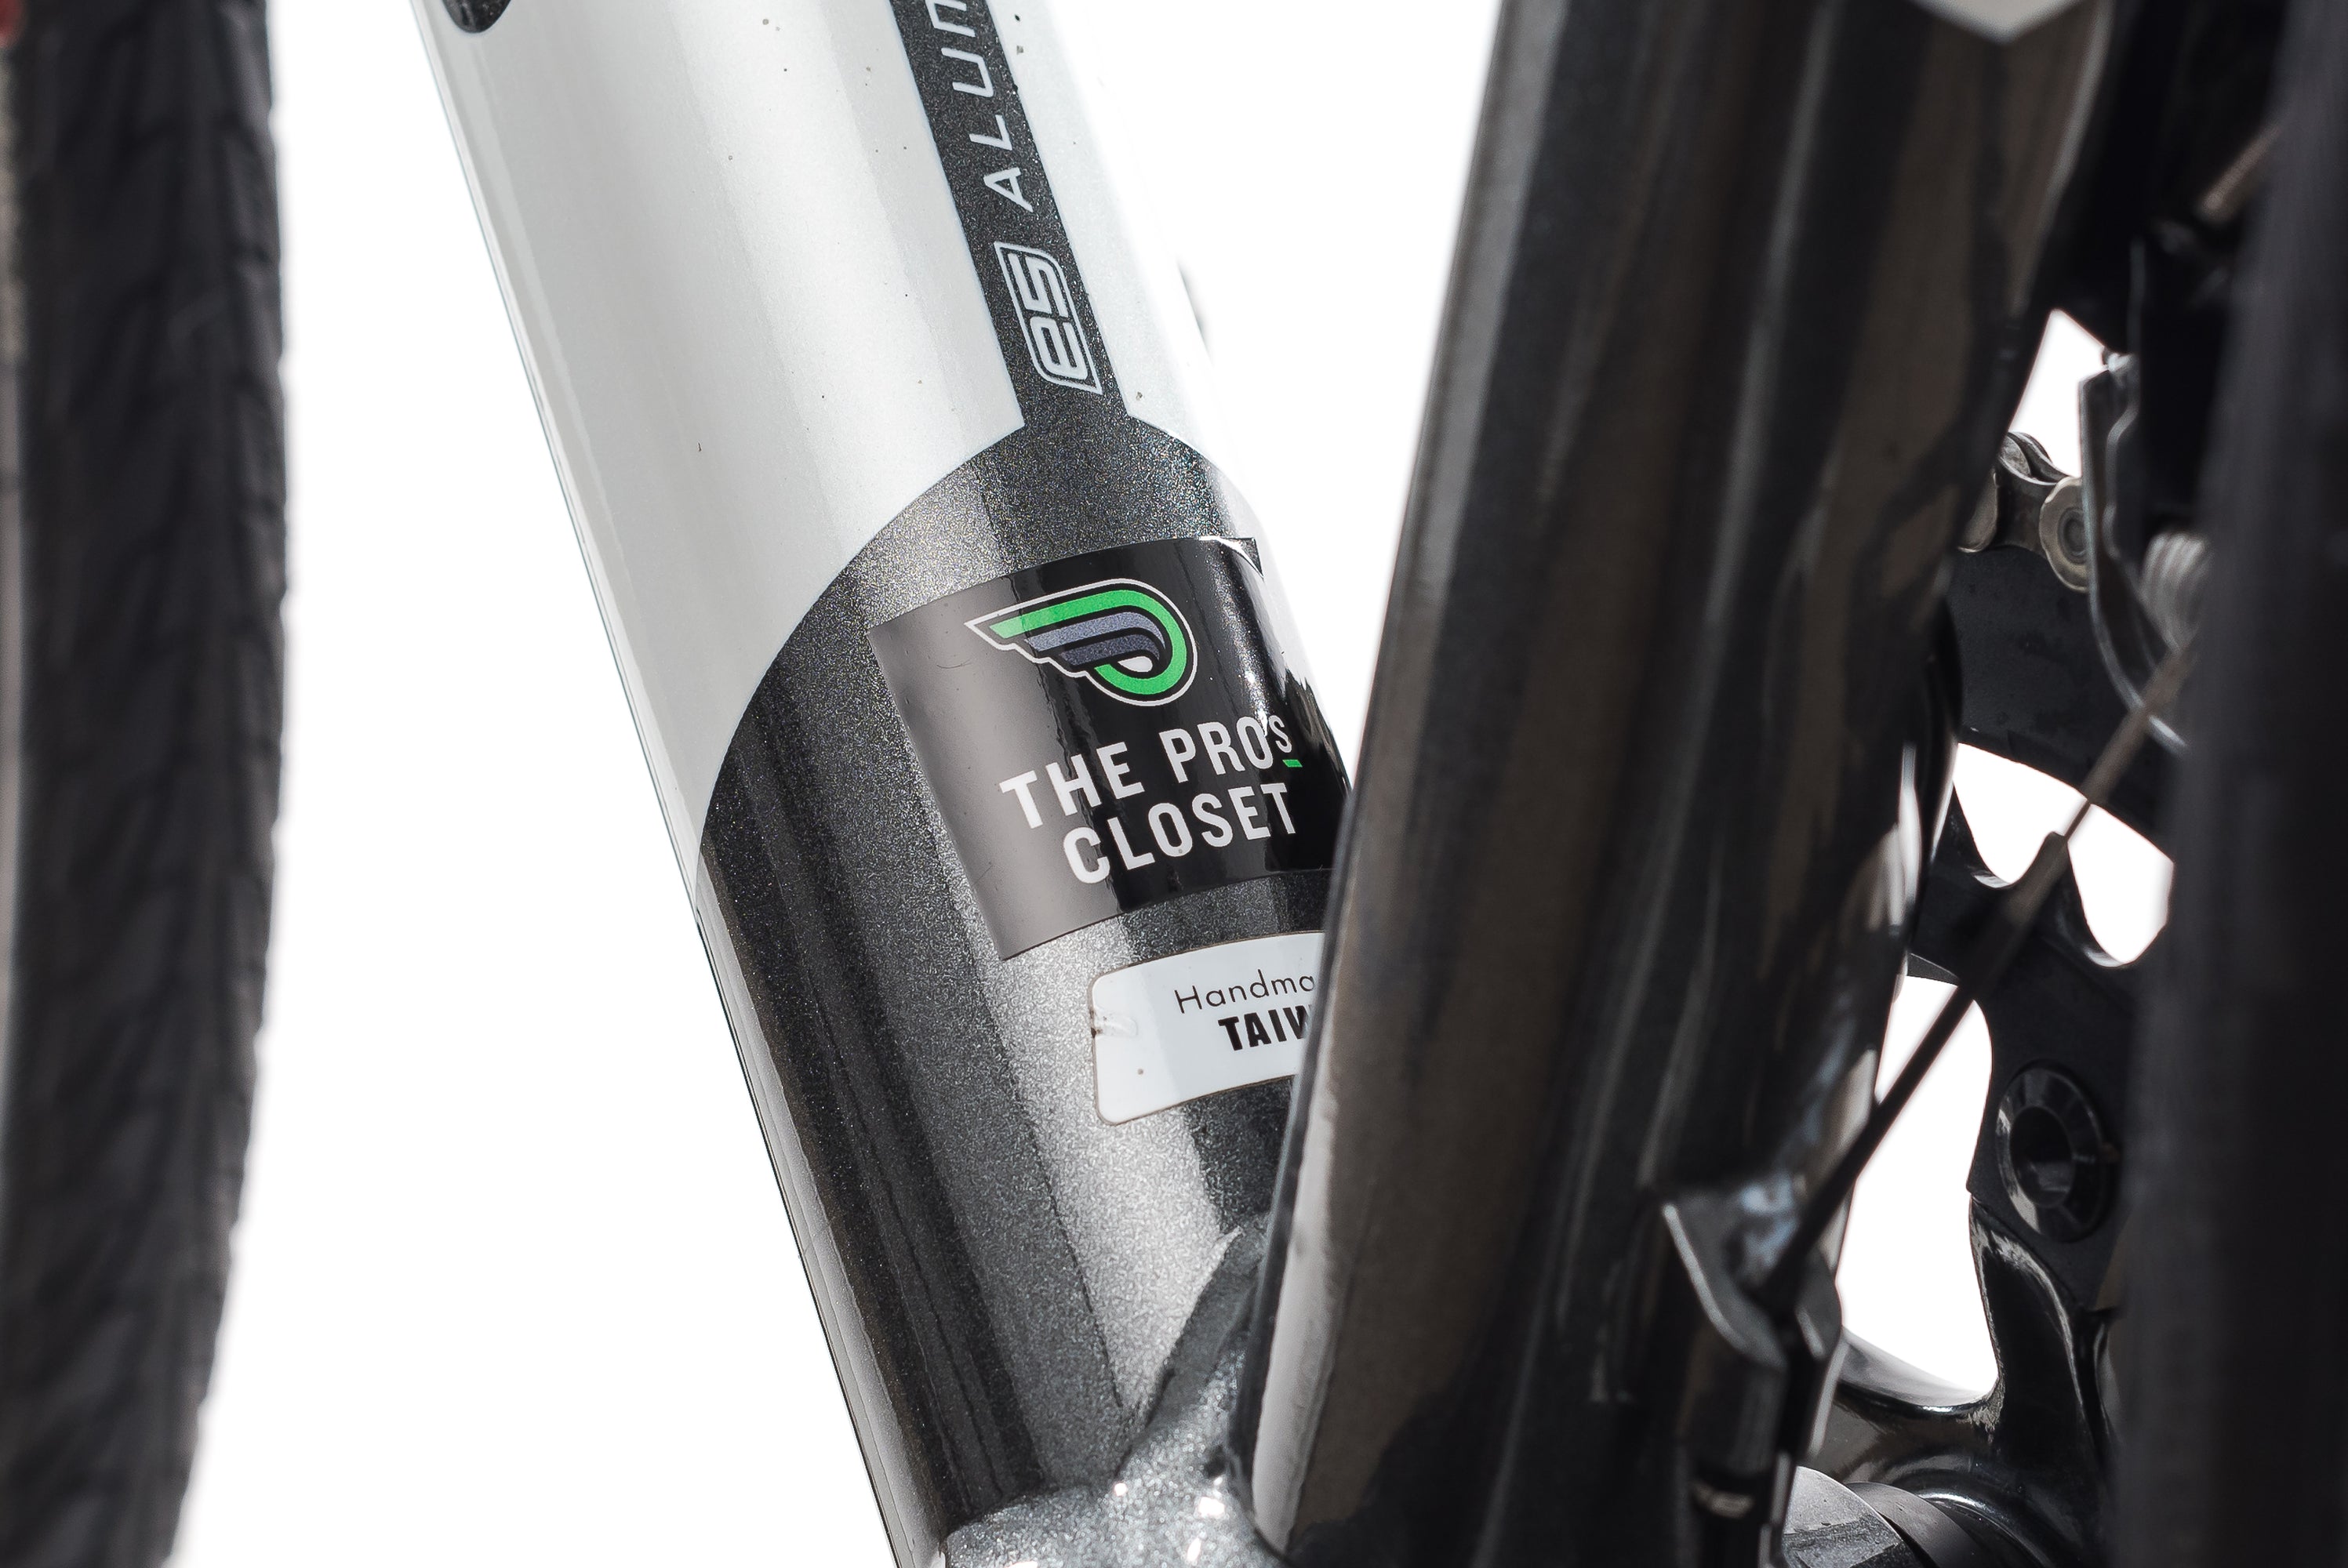 Specialized Crux Sport E5 52cm Bike - 2014 sticker